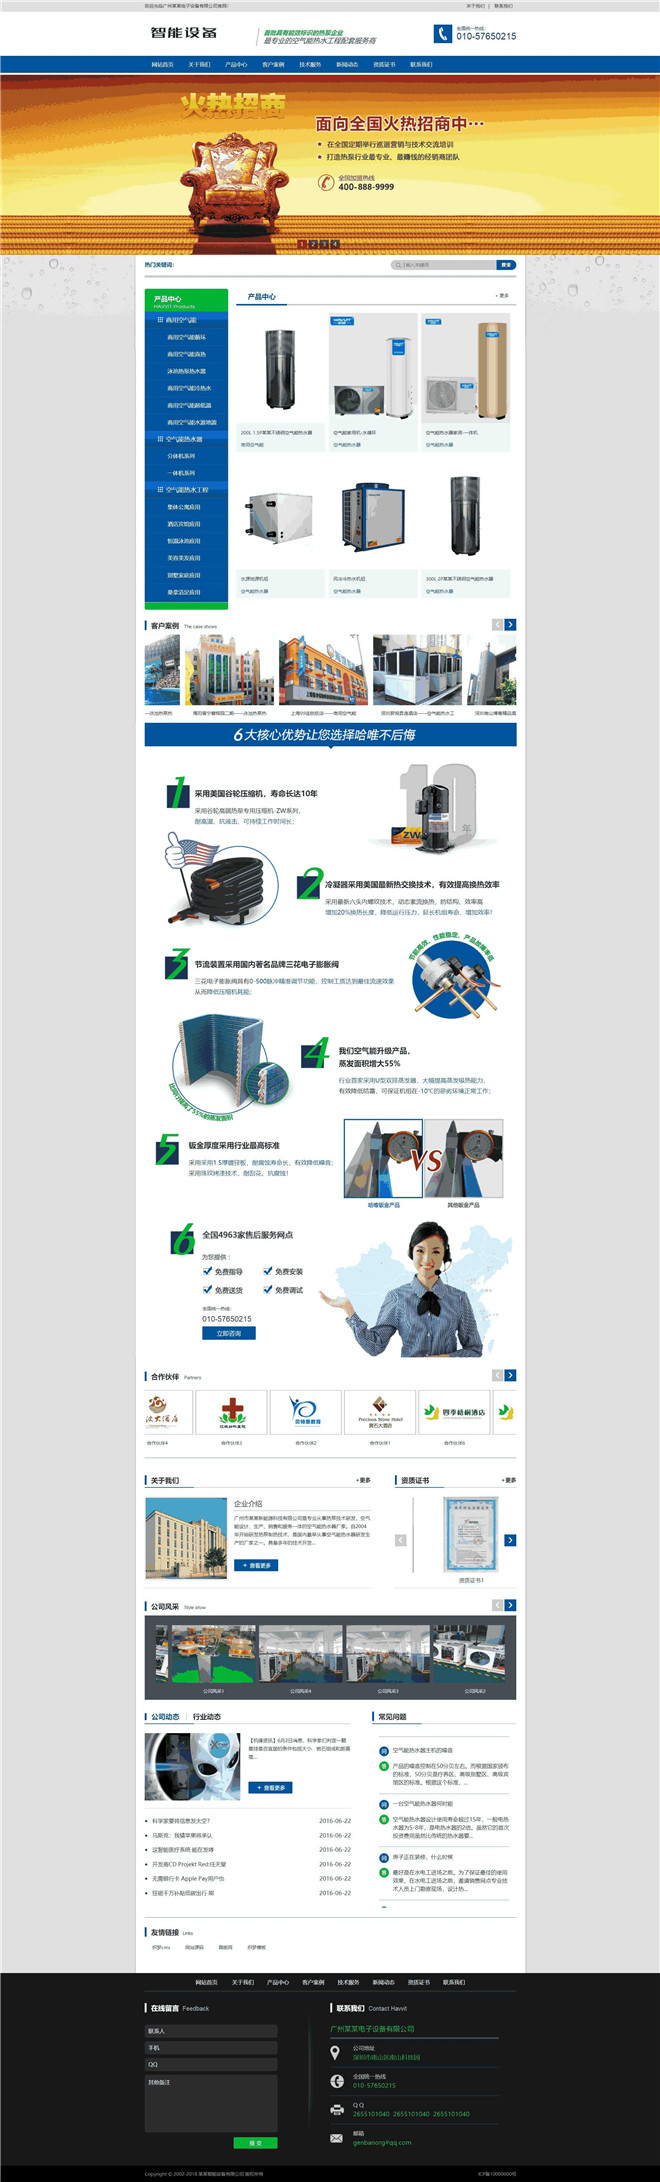 营销型智能电子设备热泵热水工程响应式网站WordPress模板演示图